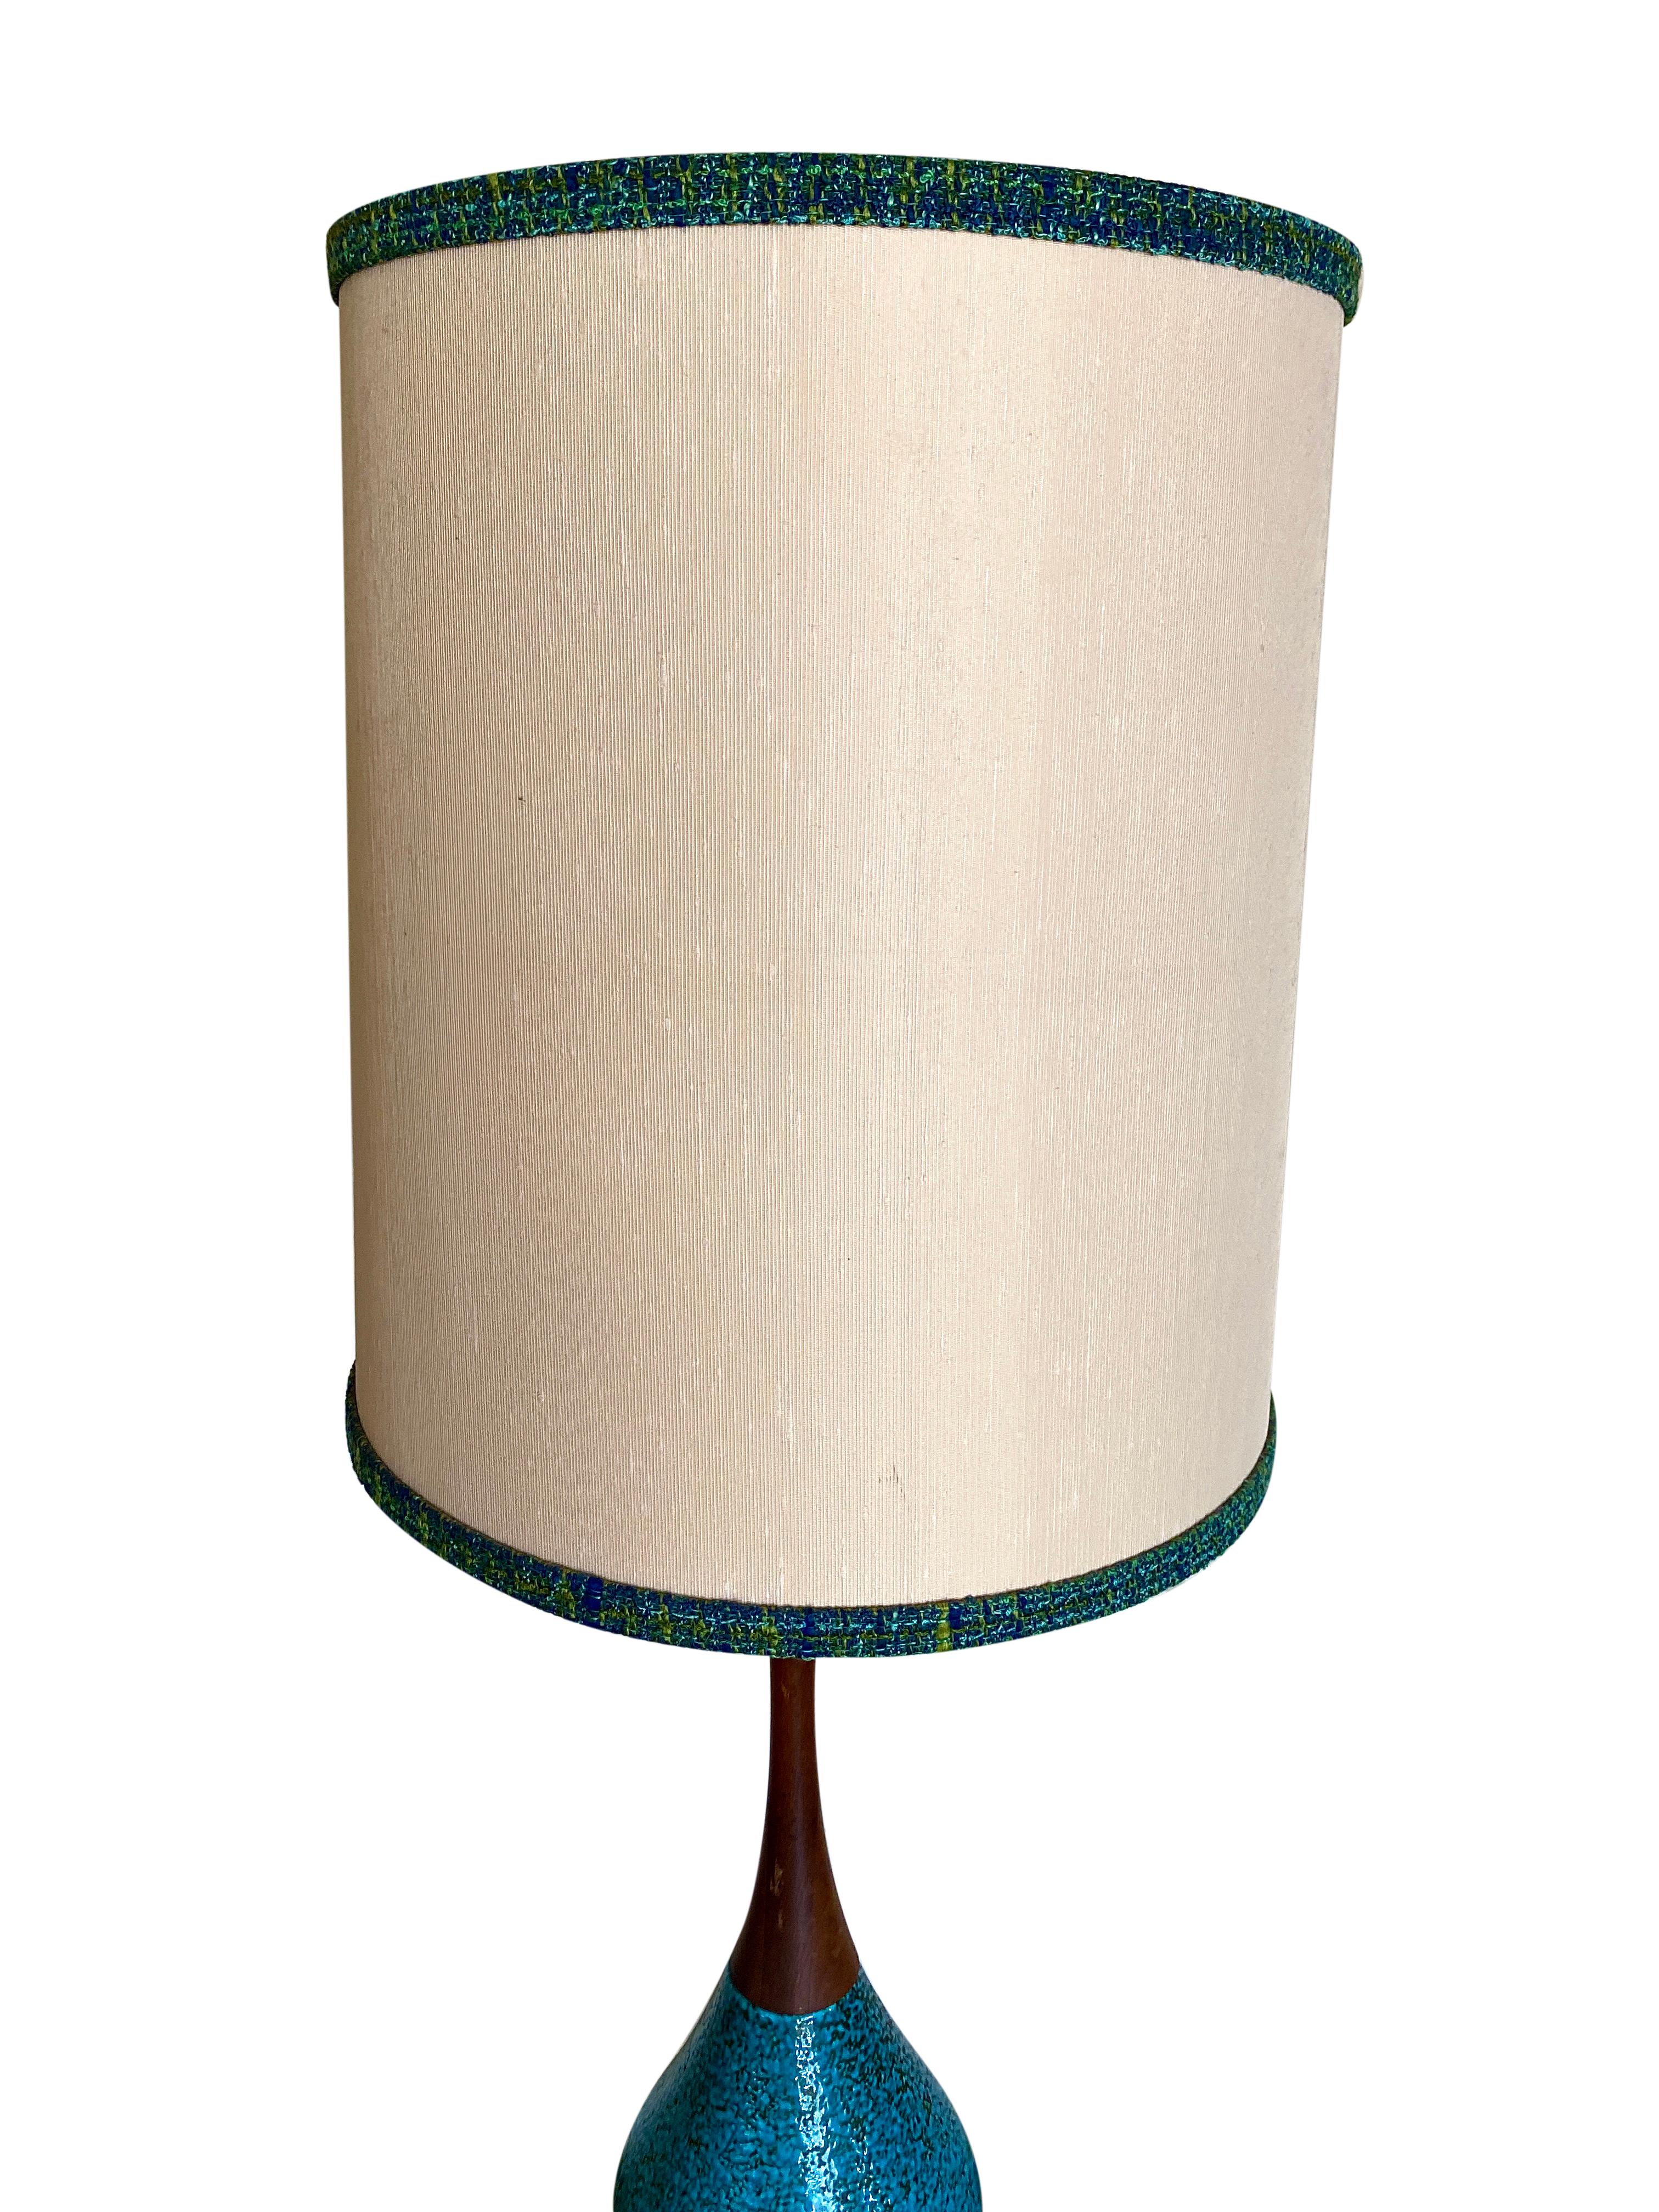 American Mid-Century Modern Aqua Ceramic Lamp